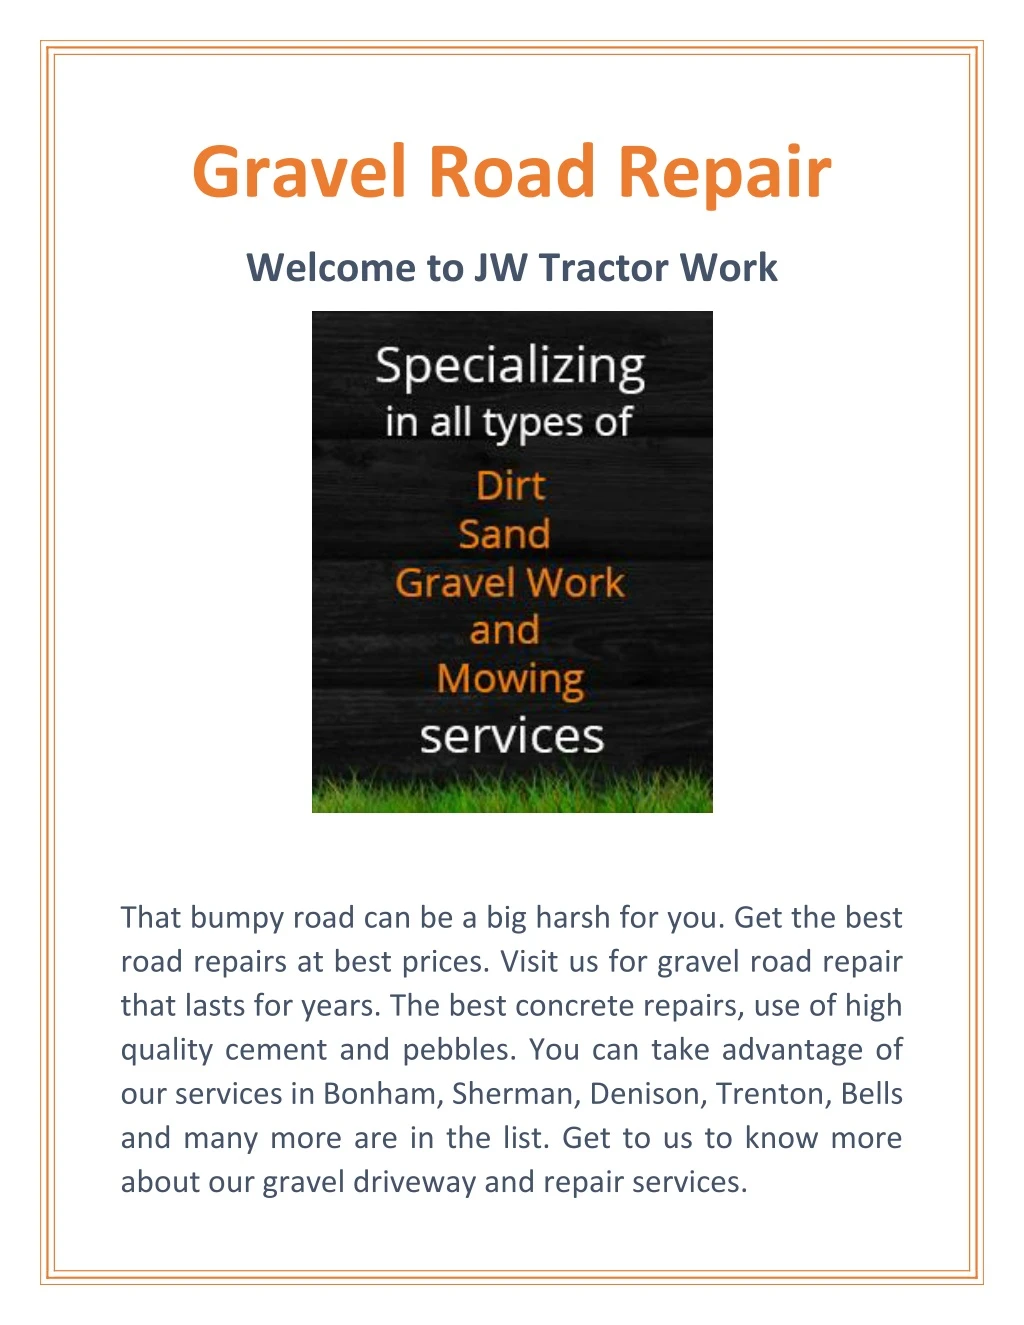 gravel road repair